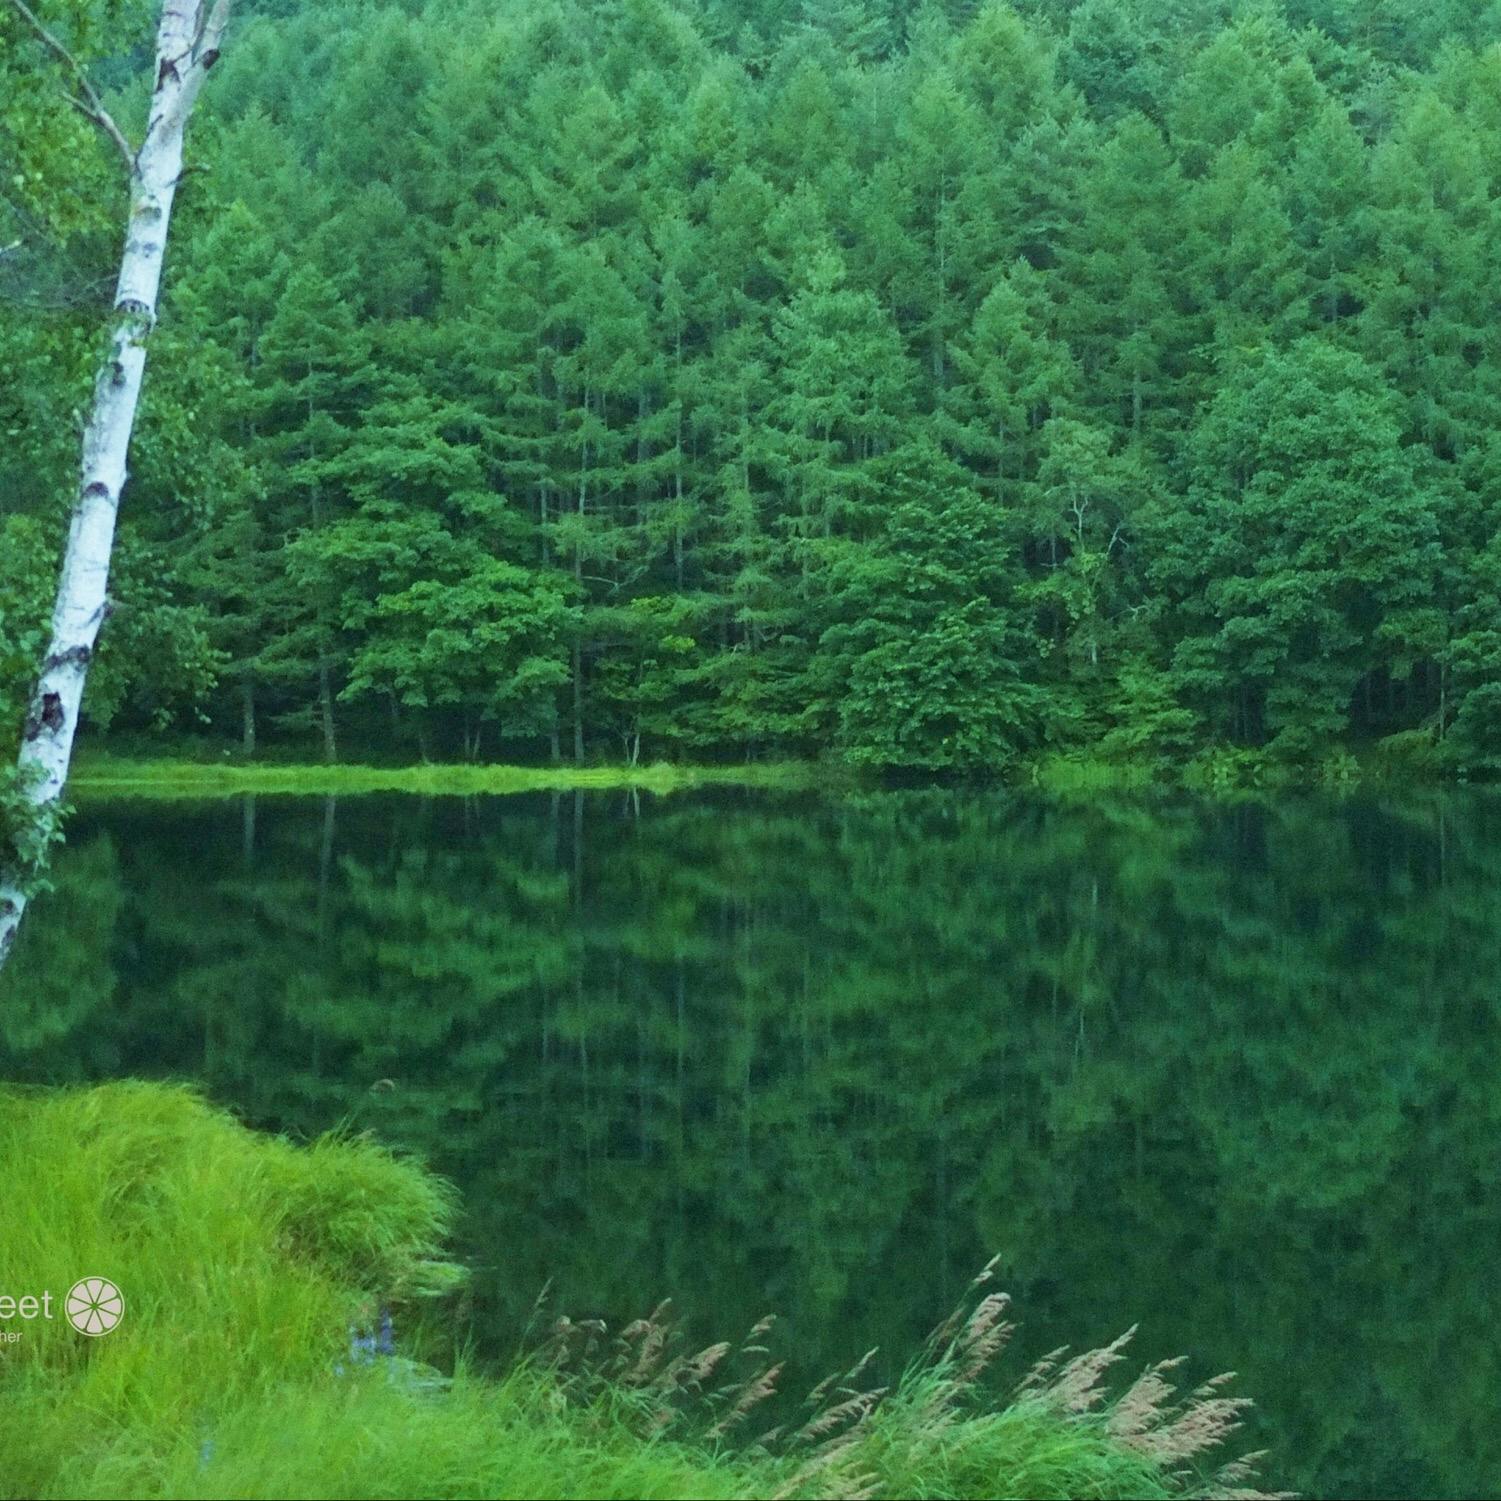 御射鹿池 みしゃかいけ の投稿写真 感想 みどころ 東山魁夷の絵画 緑響く のモチーフになった御射鹿池です トリップノート